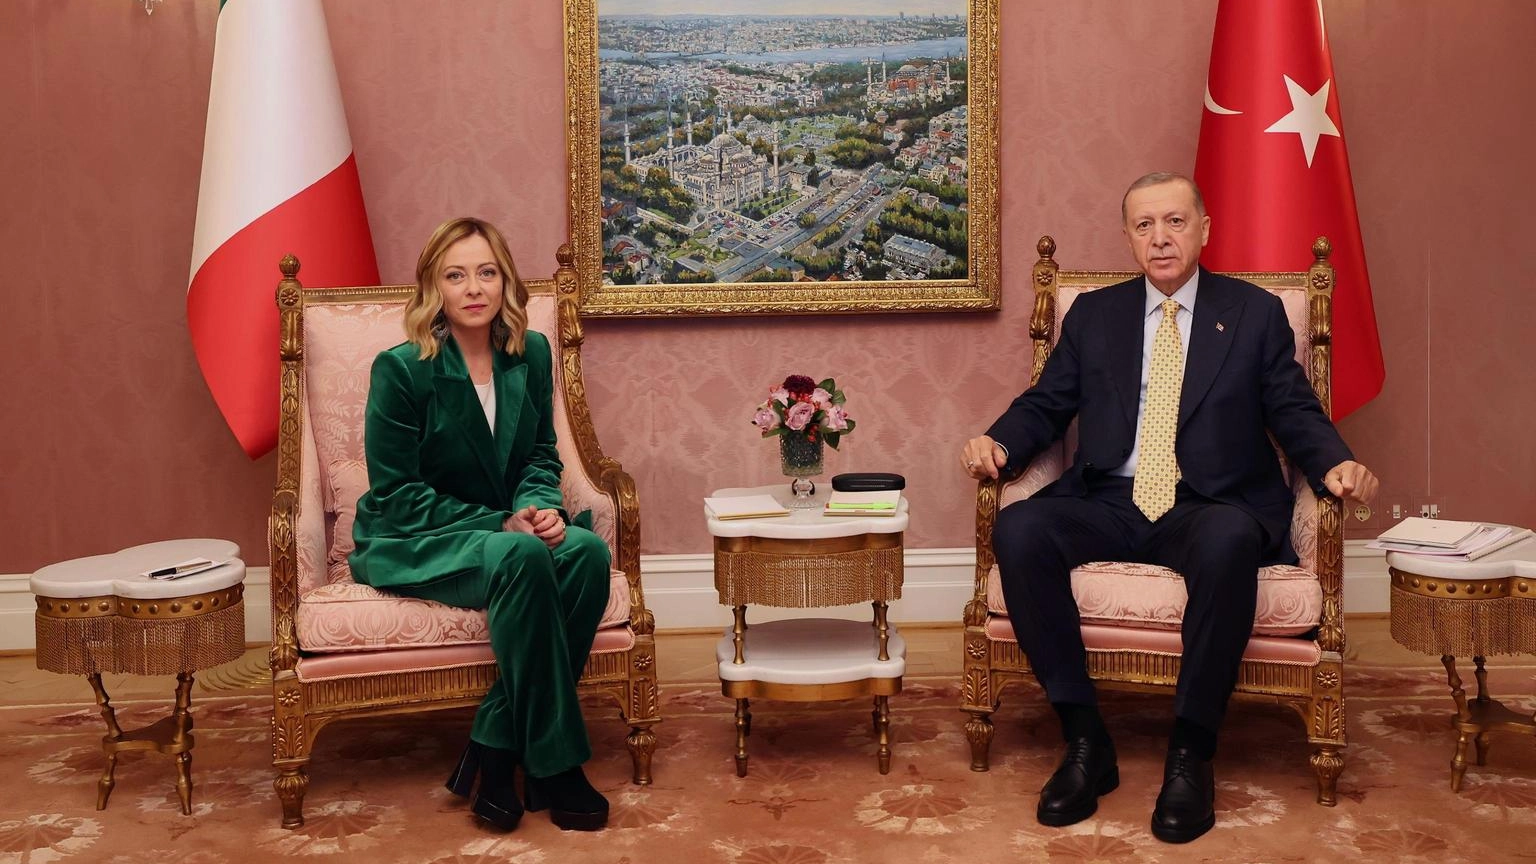 Erdogan a Meloni, Italia riconosca lo Stato Palestinese